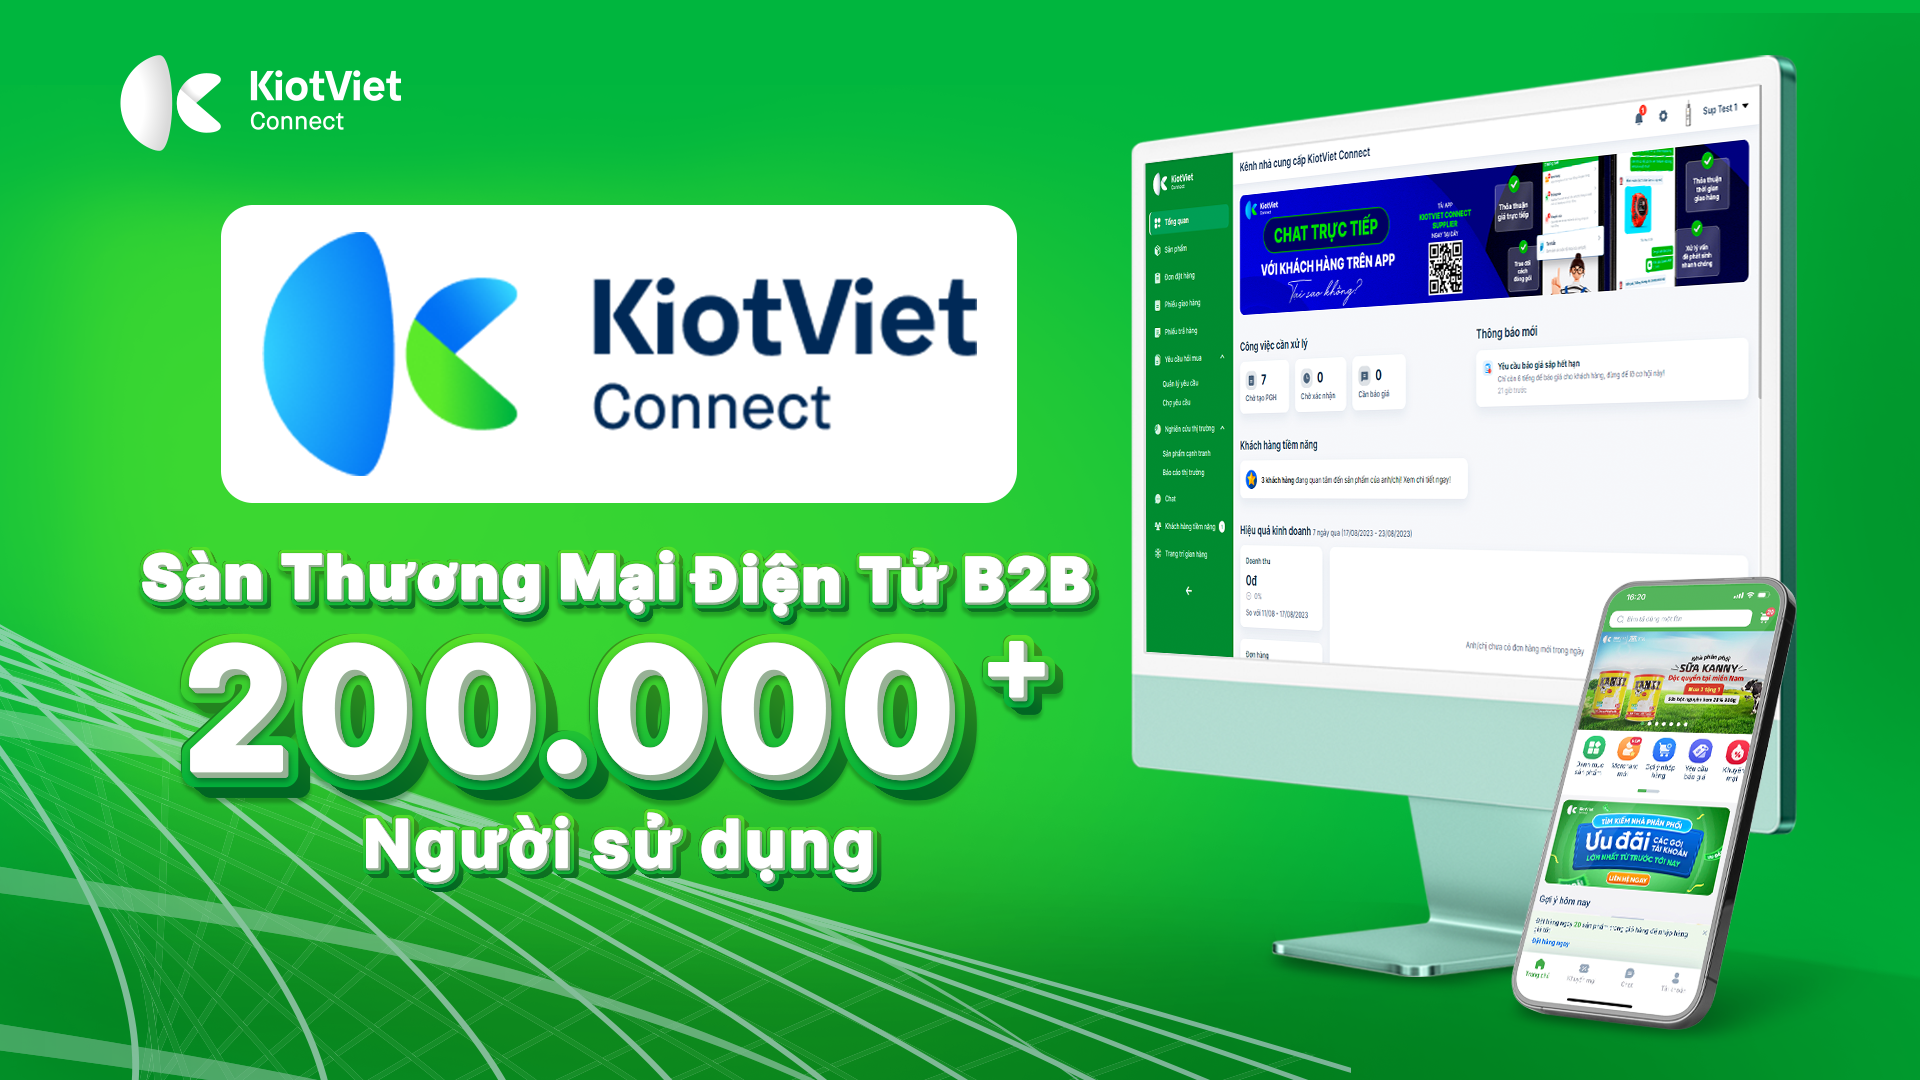 KiotViet Connect - Sàn thương mại điện tử mua bán sỉ phổ biến nhất thị trường